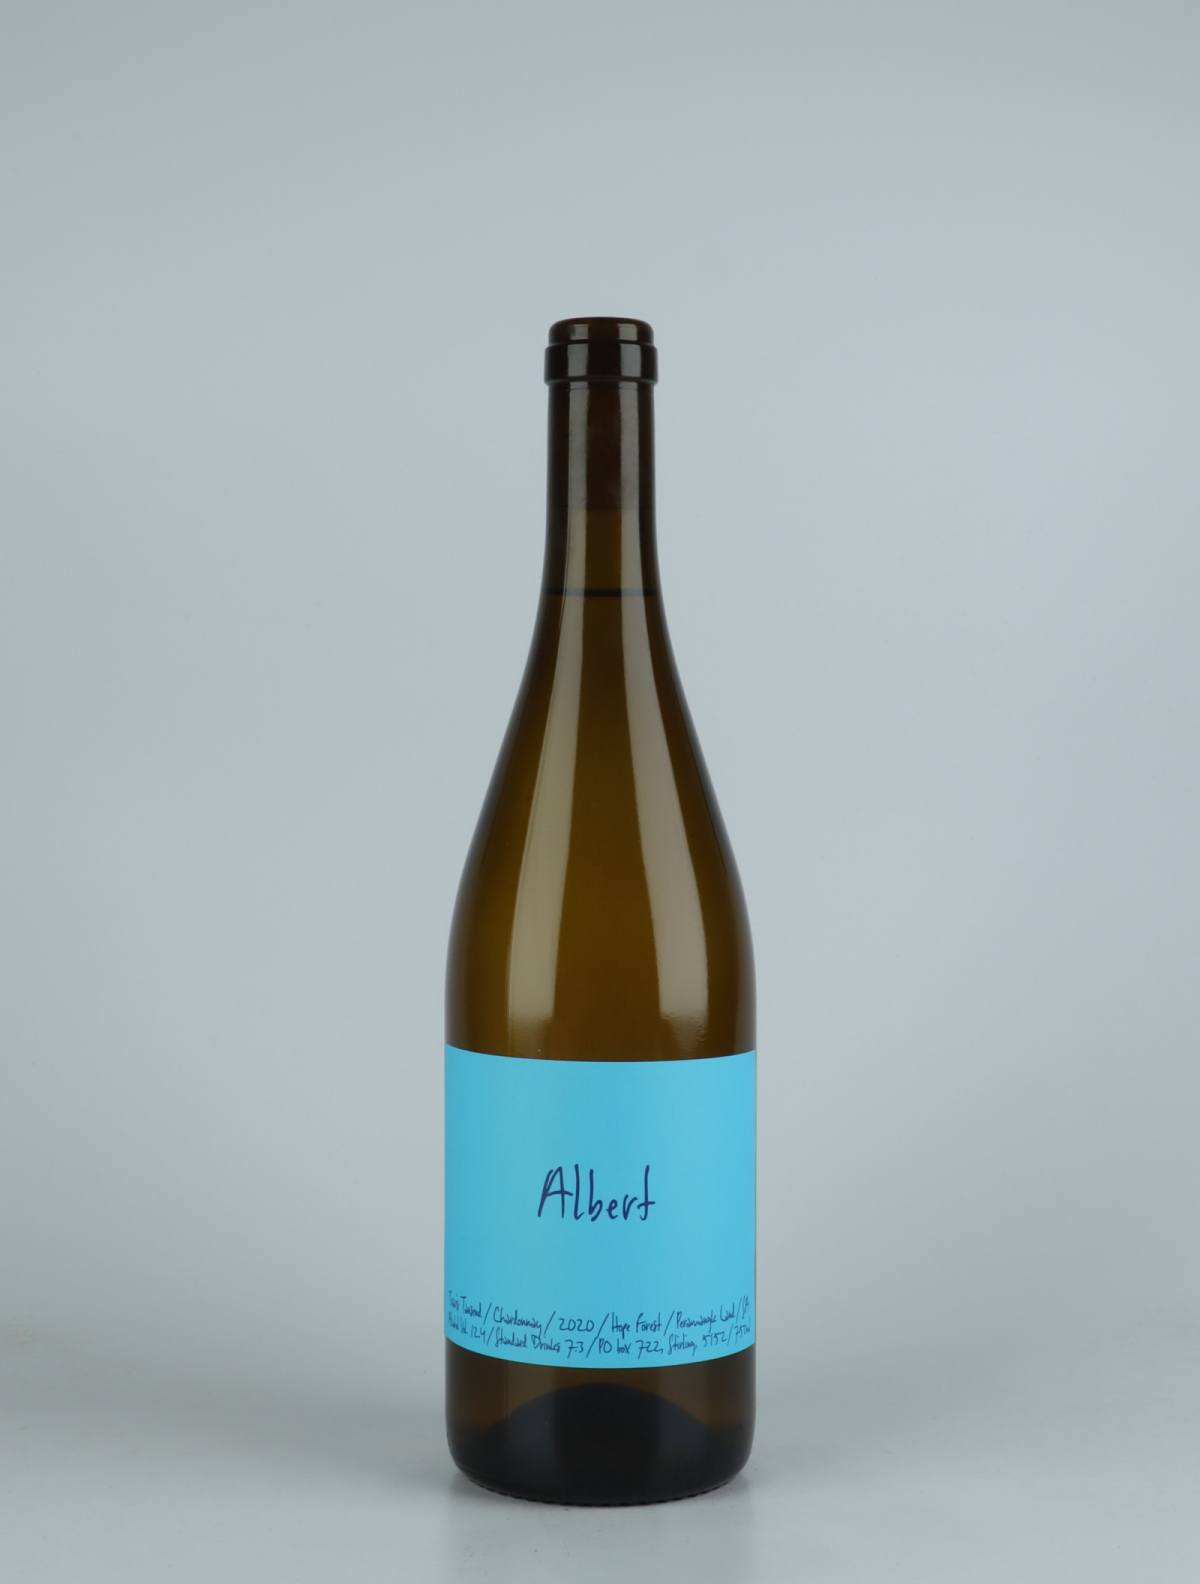 A bottle 2020 Albert Chardonnay White wine from Travis Tausend, Adelaide Hills in Australia